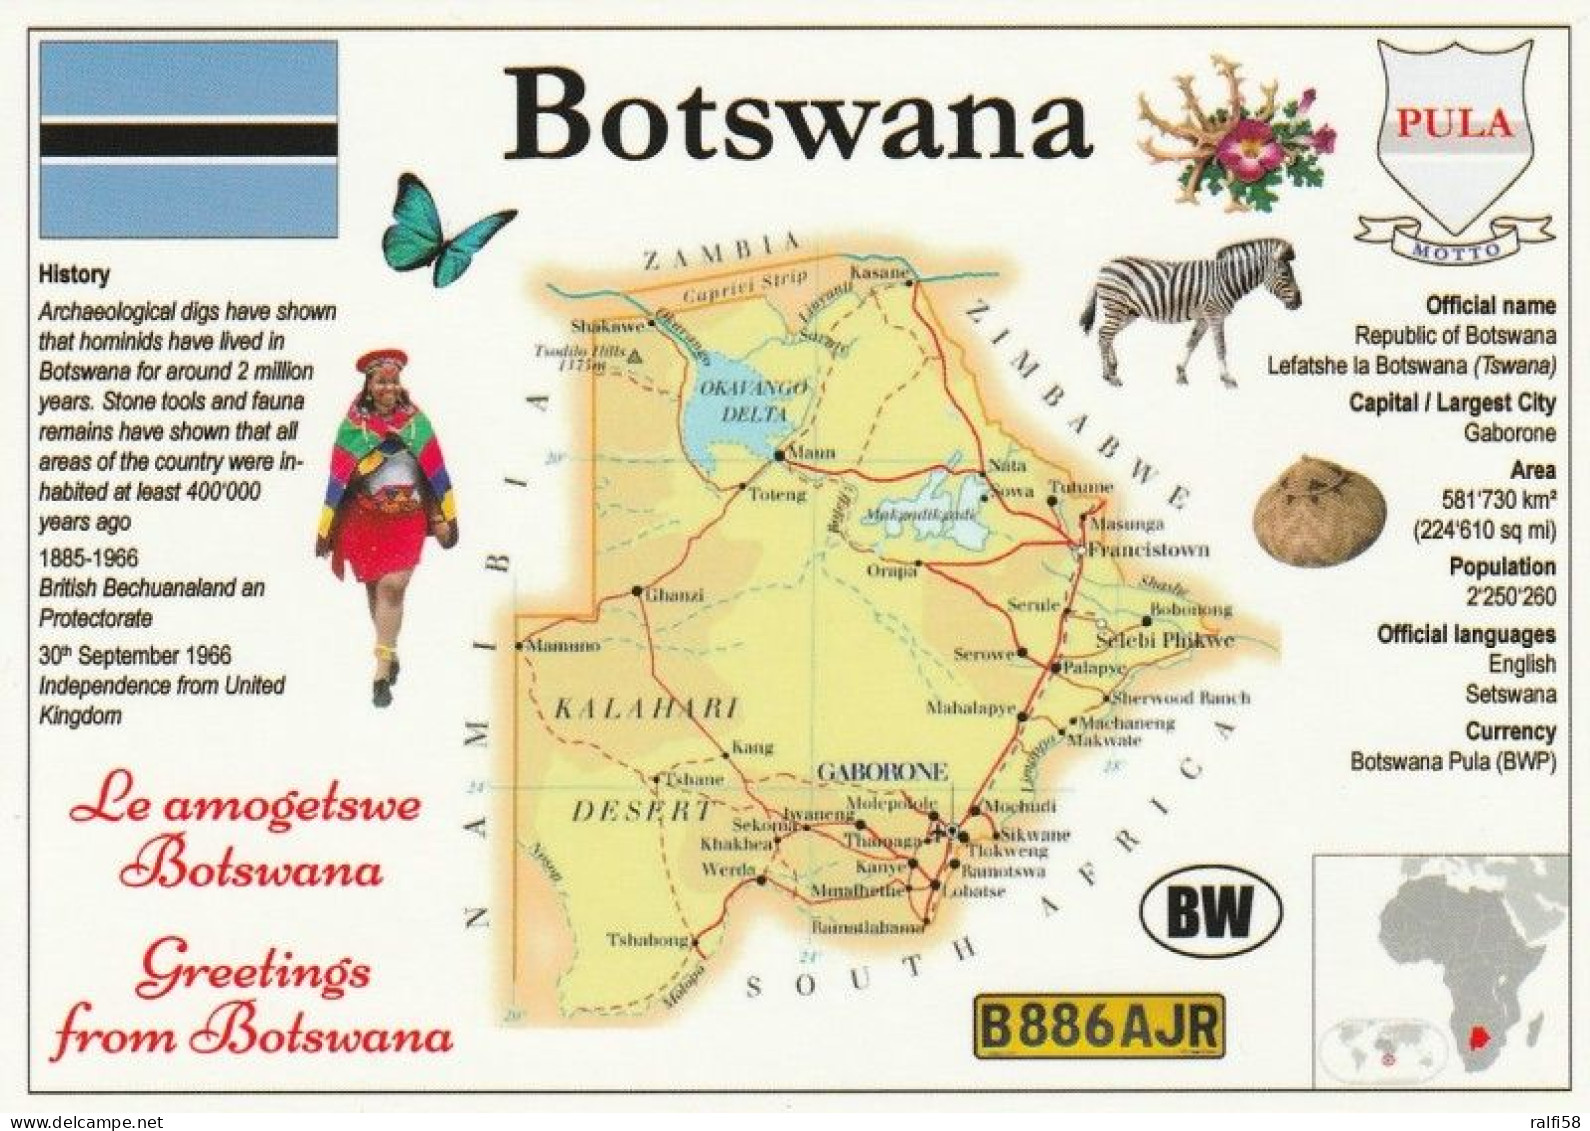 1 Map Of Botswana * 1 Ansichtskarte Mit Der Landkarte Von Botswana, Informationen Und Der Flagge Des Landes * - Mapas